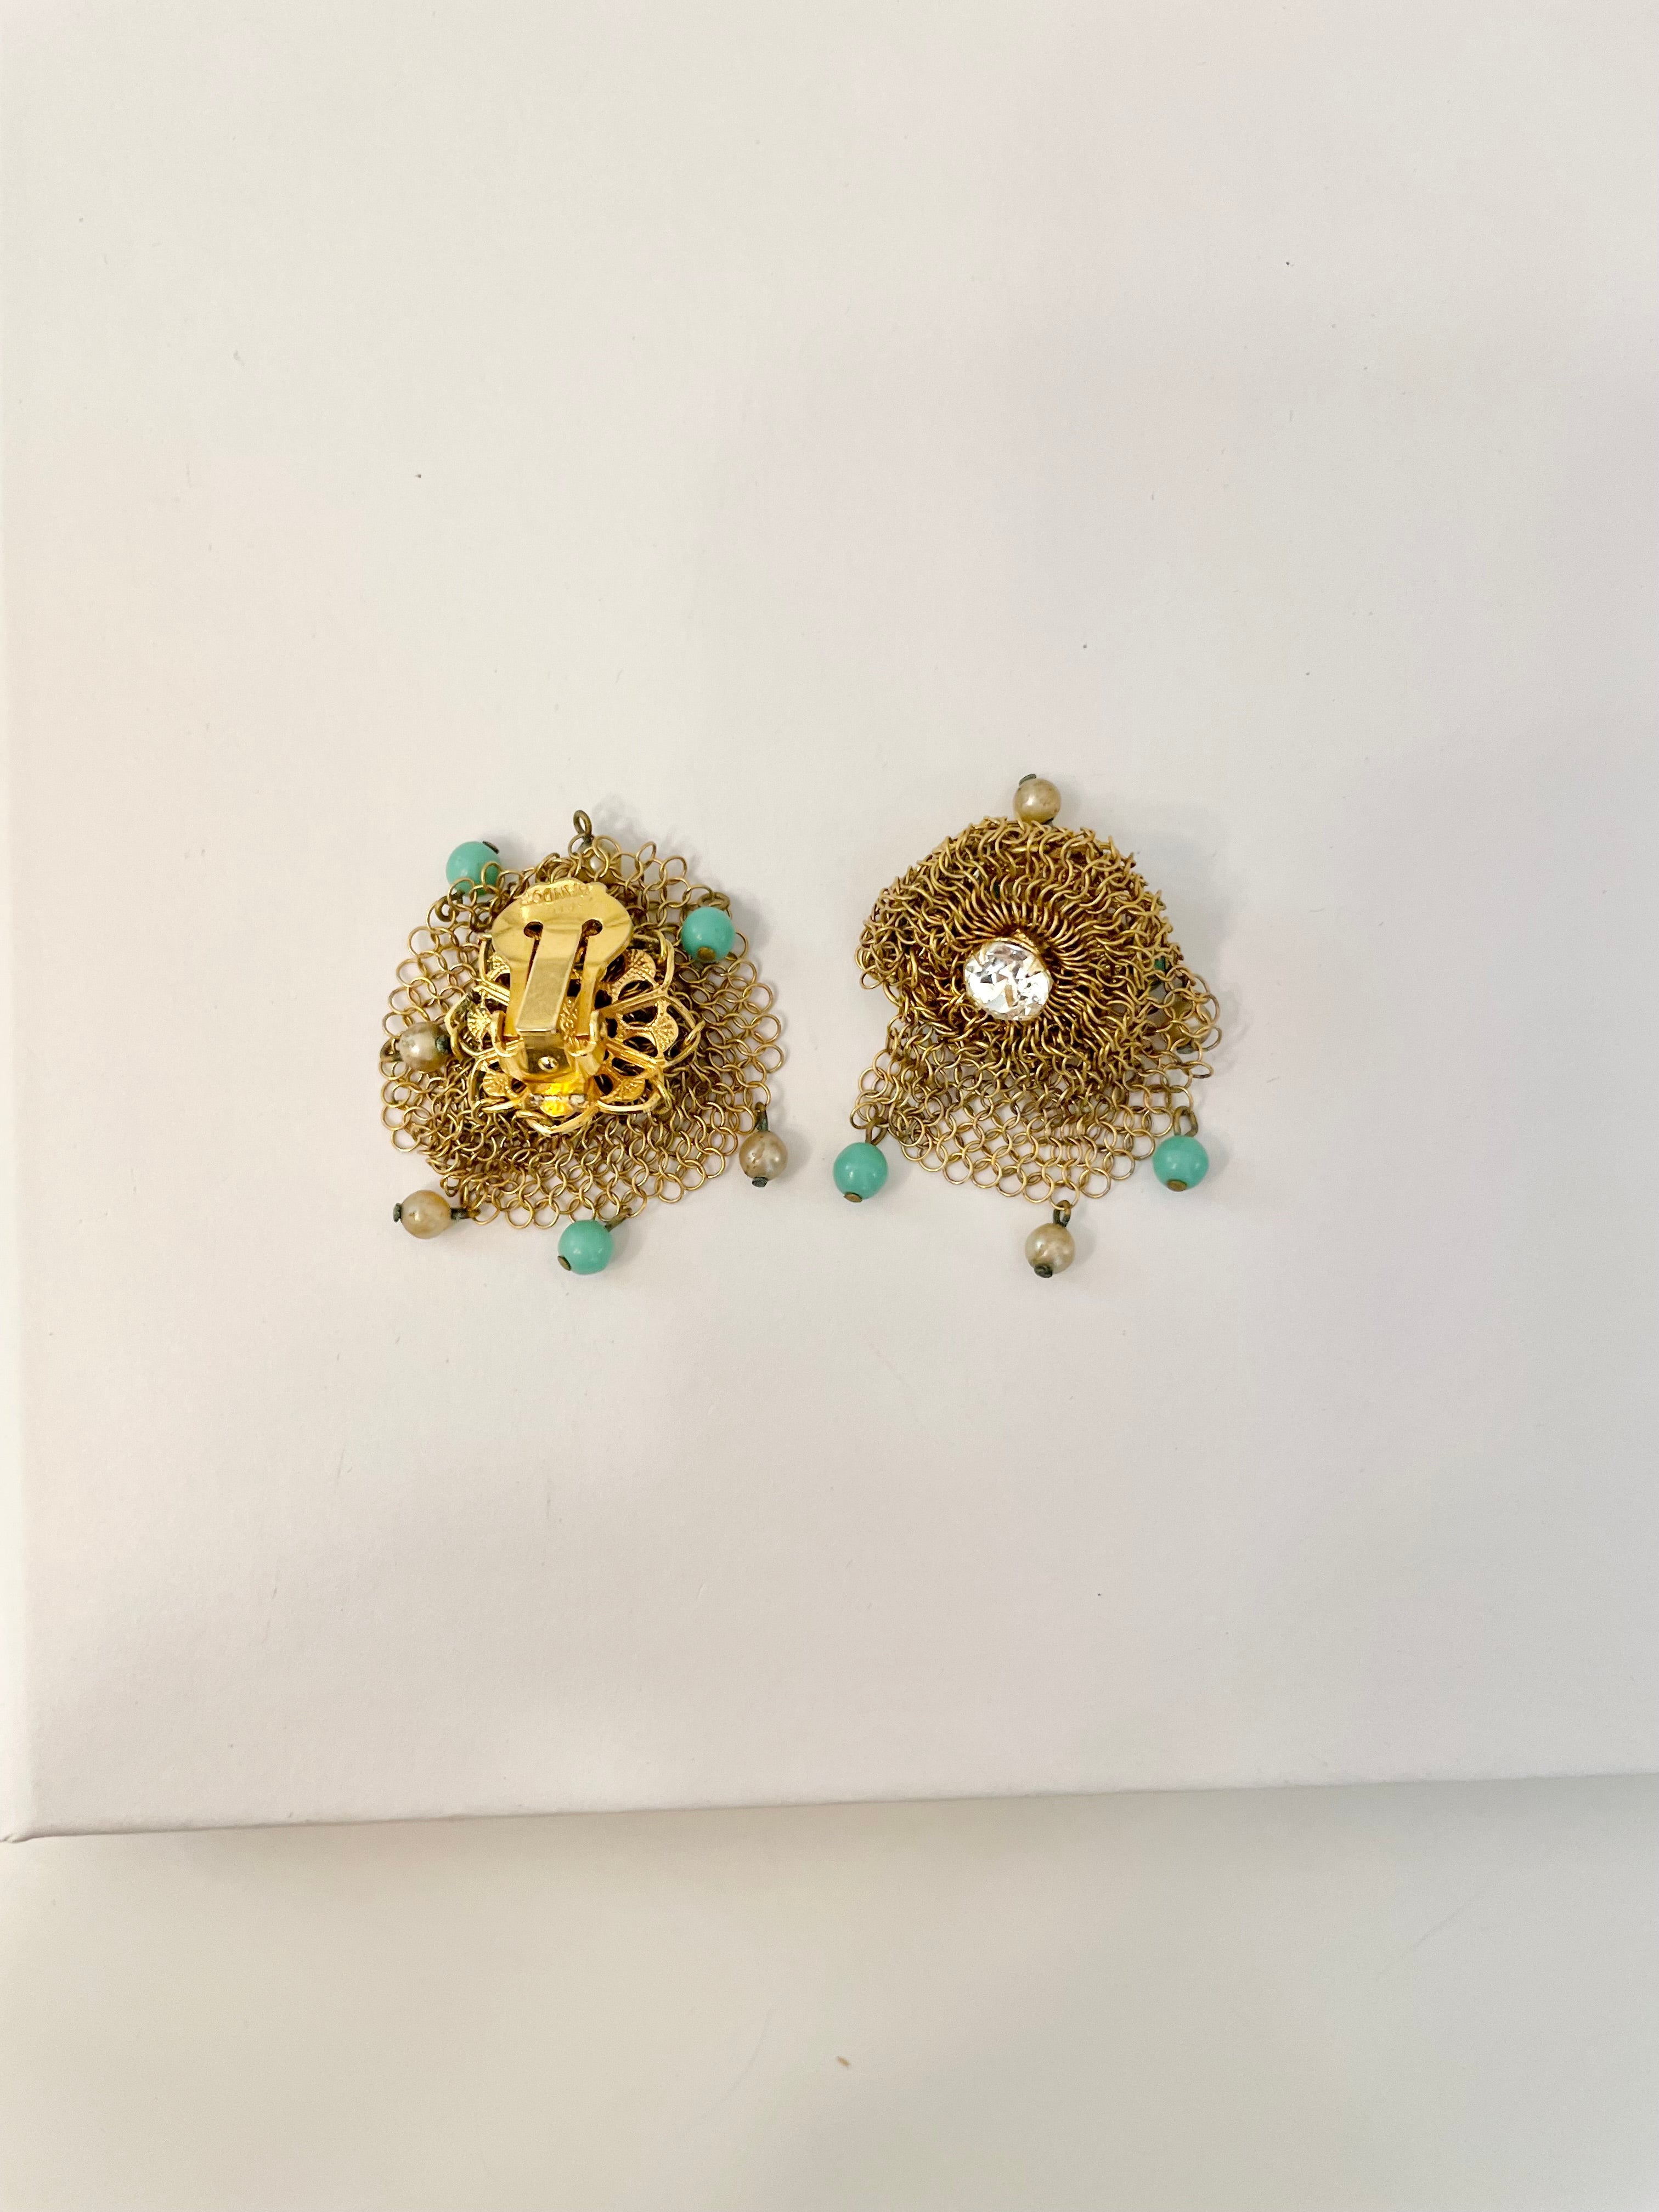 Stunning 1950's rare gold mesh divine clip earrings.... so lovely